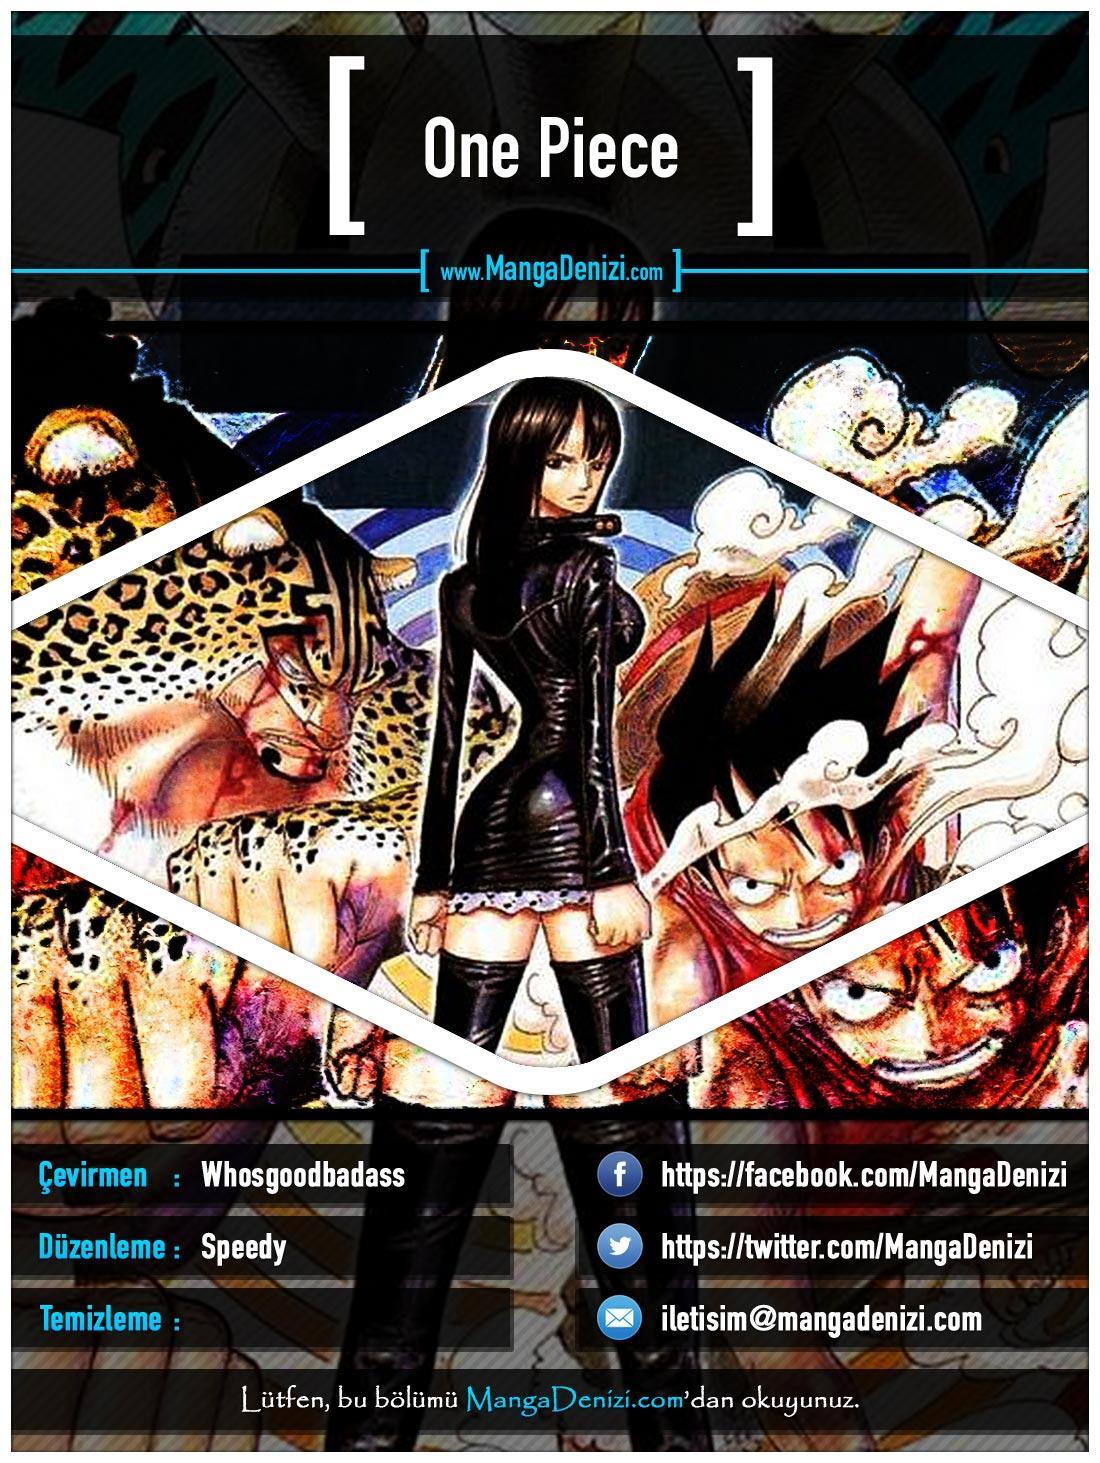 One Piece [Renkli] mangasının 0434 bölümünün 1. sayfasını okuyorsunuz.